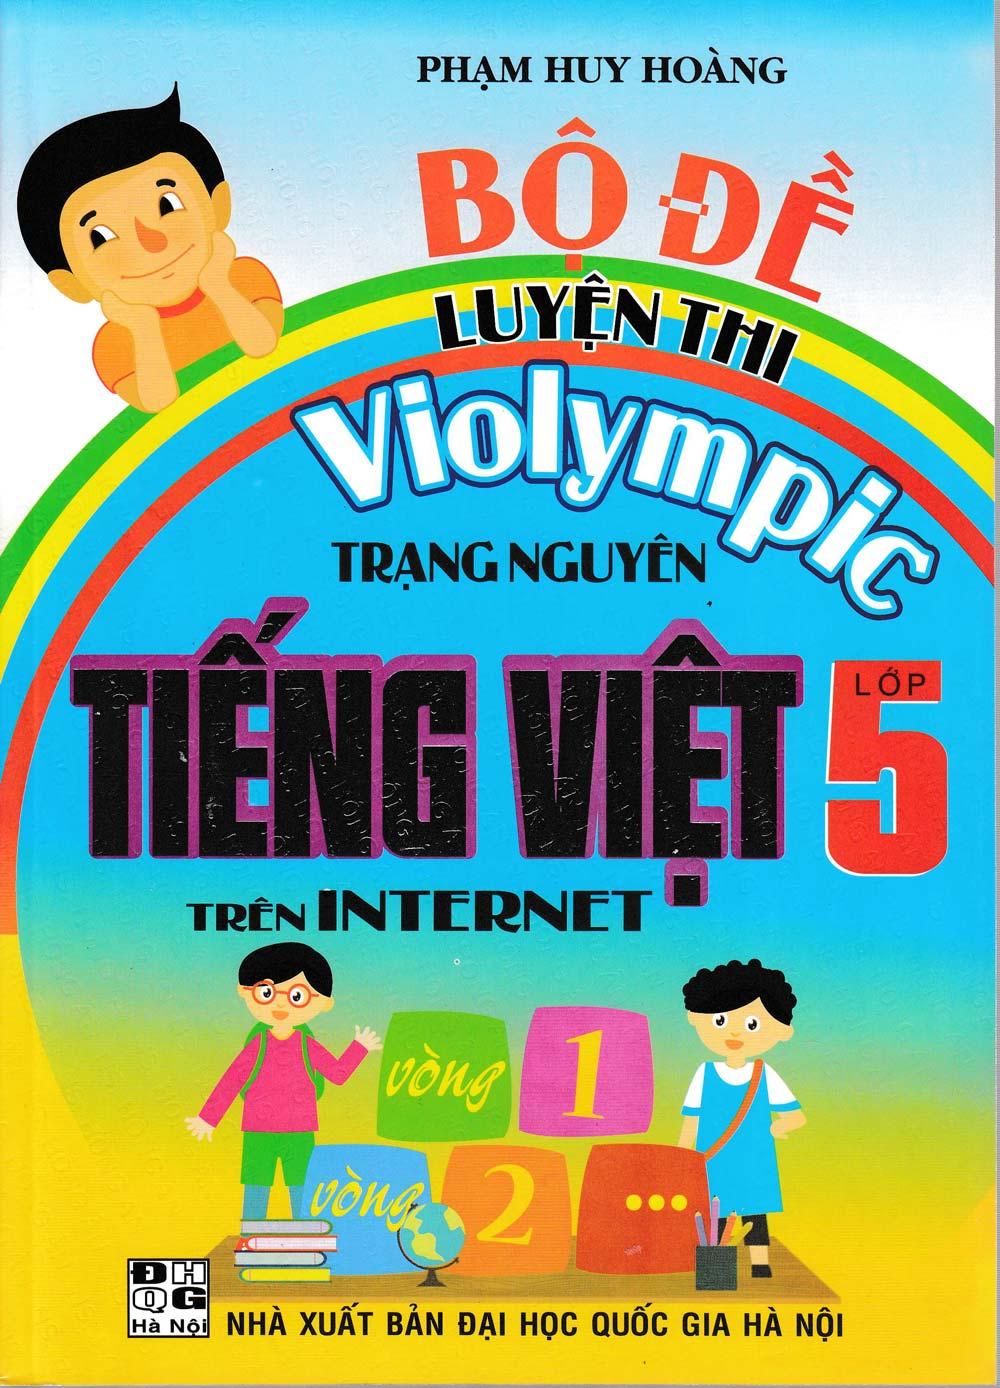 Bộ Đề Luyện Thi Violympic Trạng Nguyên Tiếng Việt Lớp 5 Trên Internet